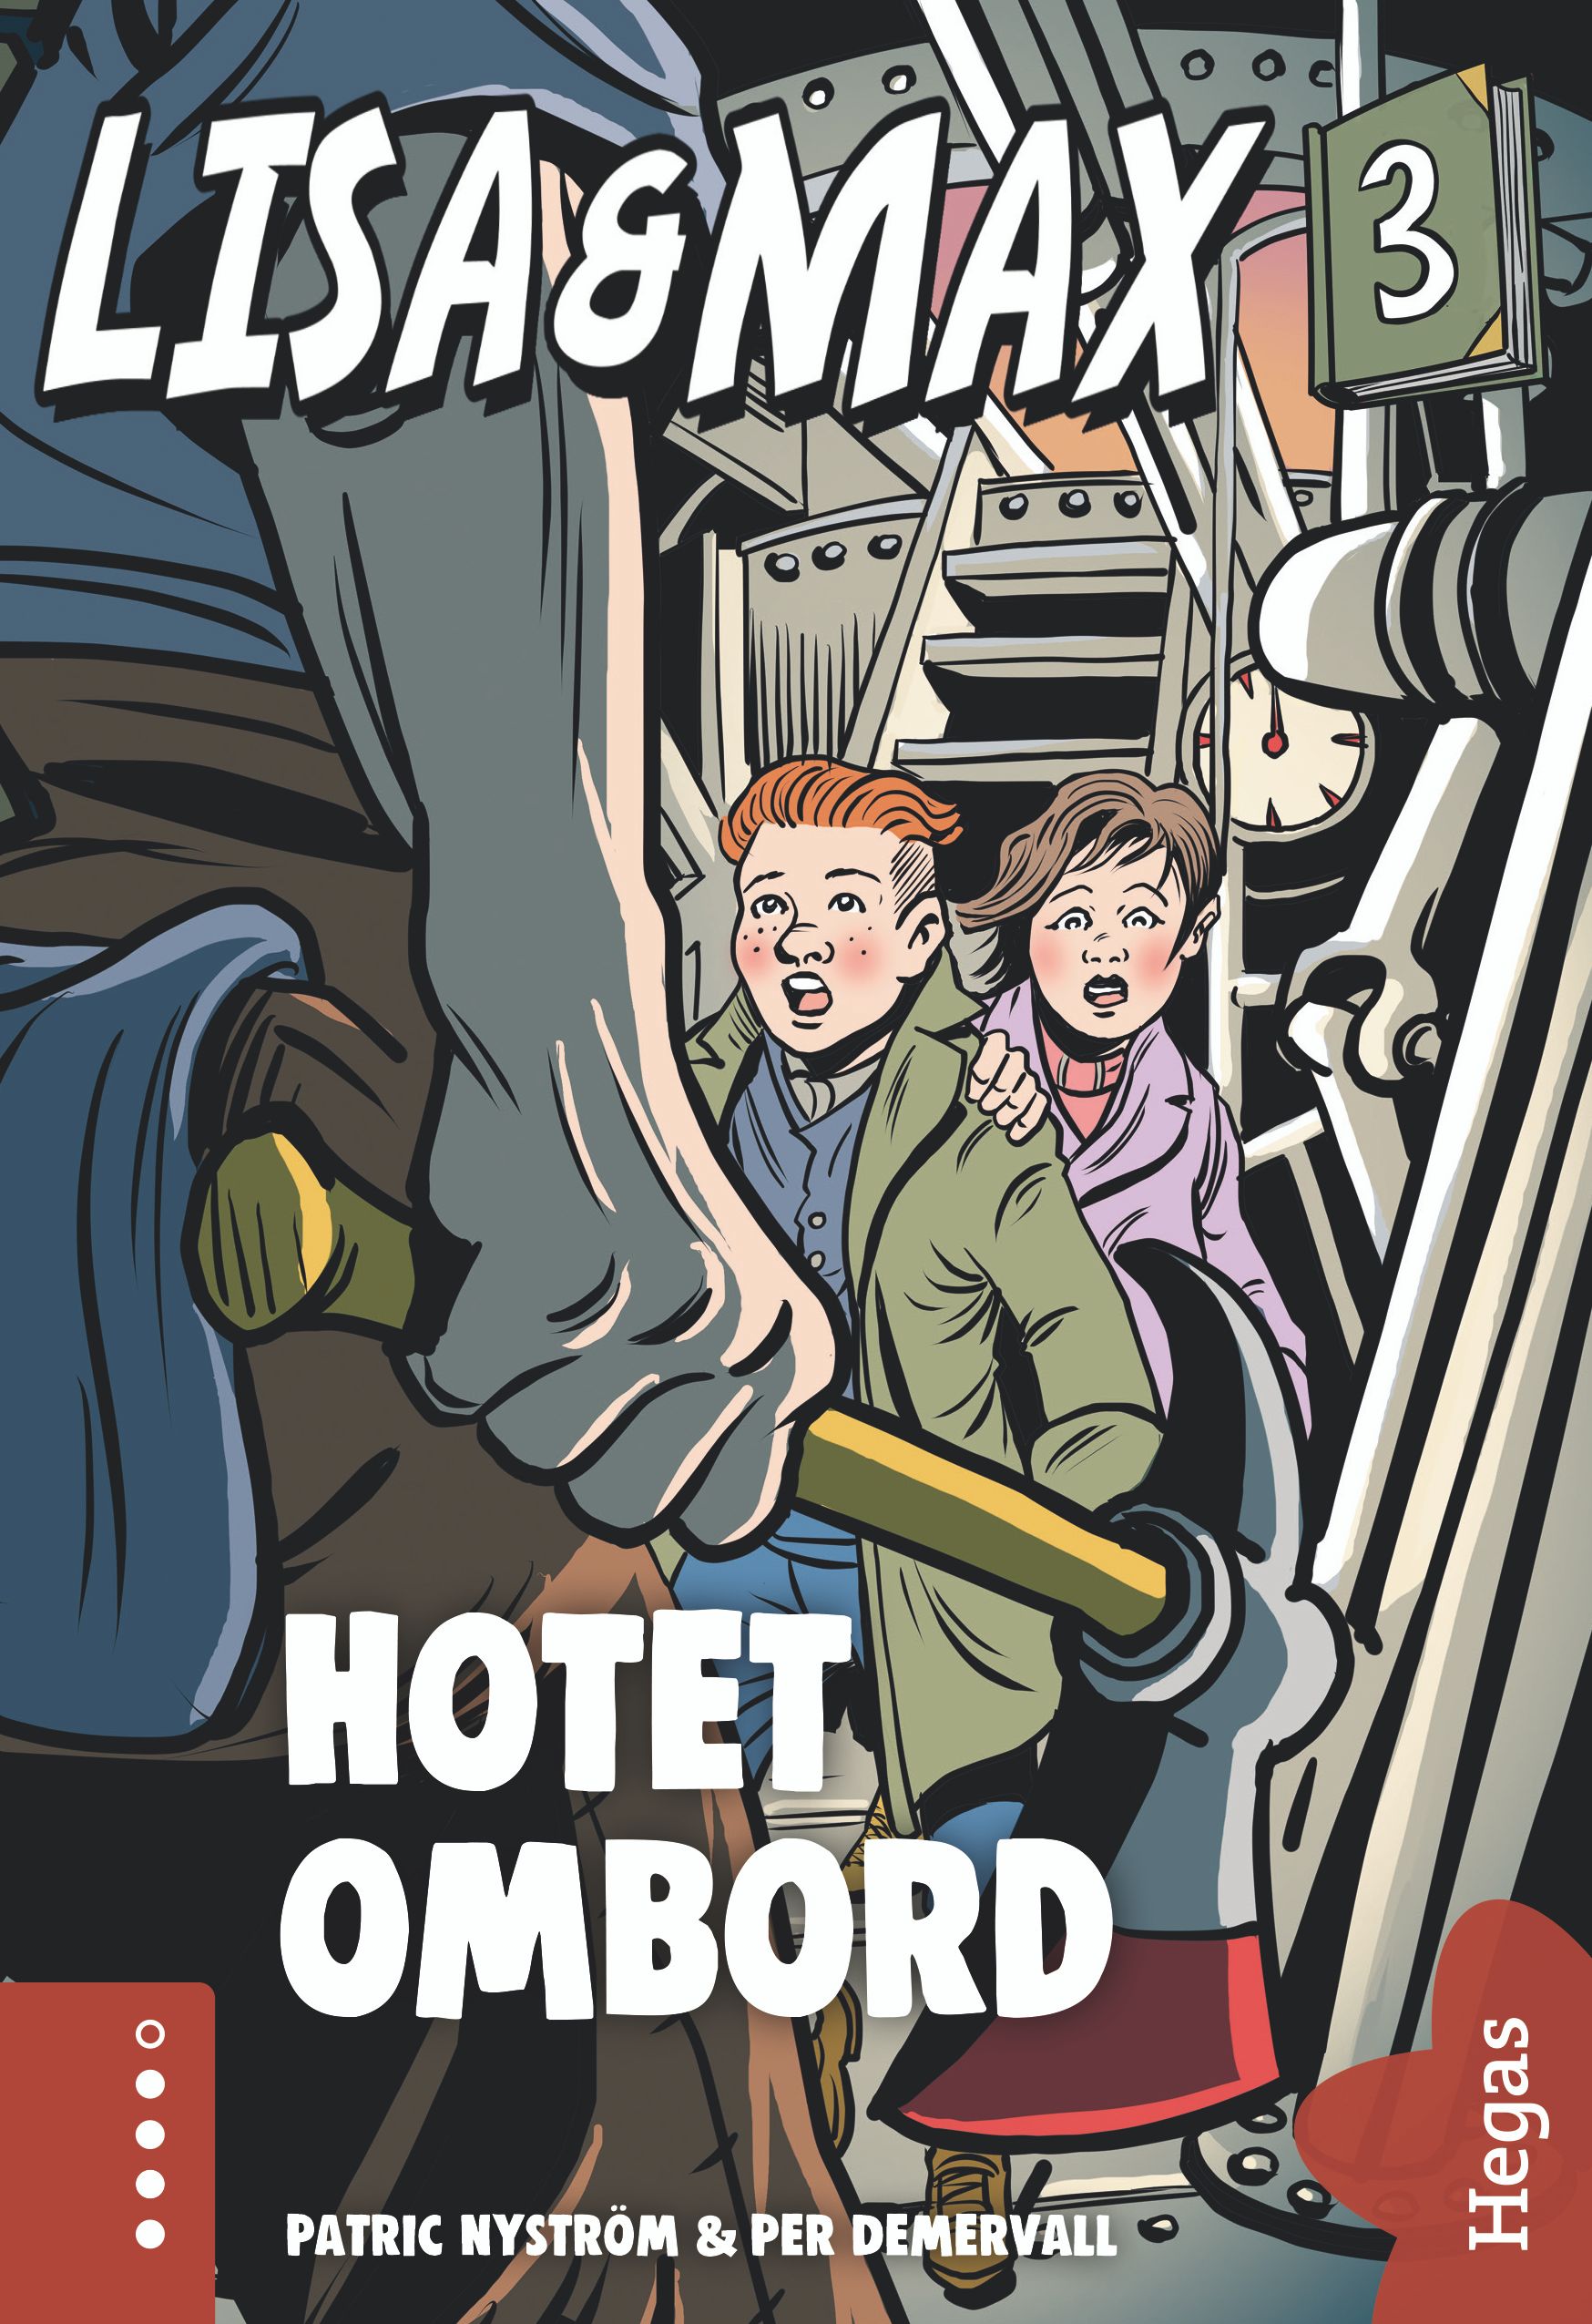 Lisa och Max - Hotet ombord, eBook by Patric Nyström